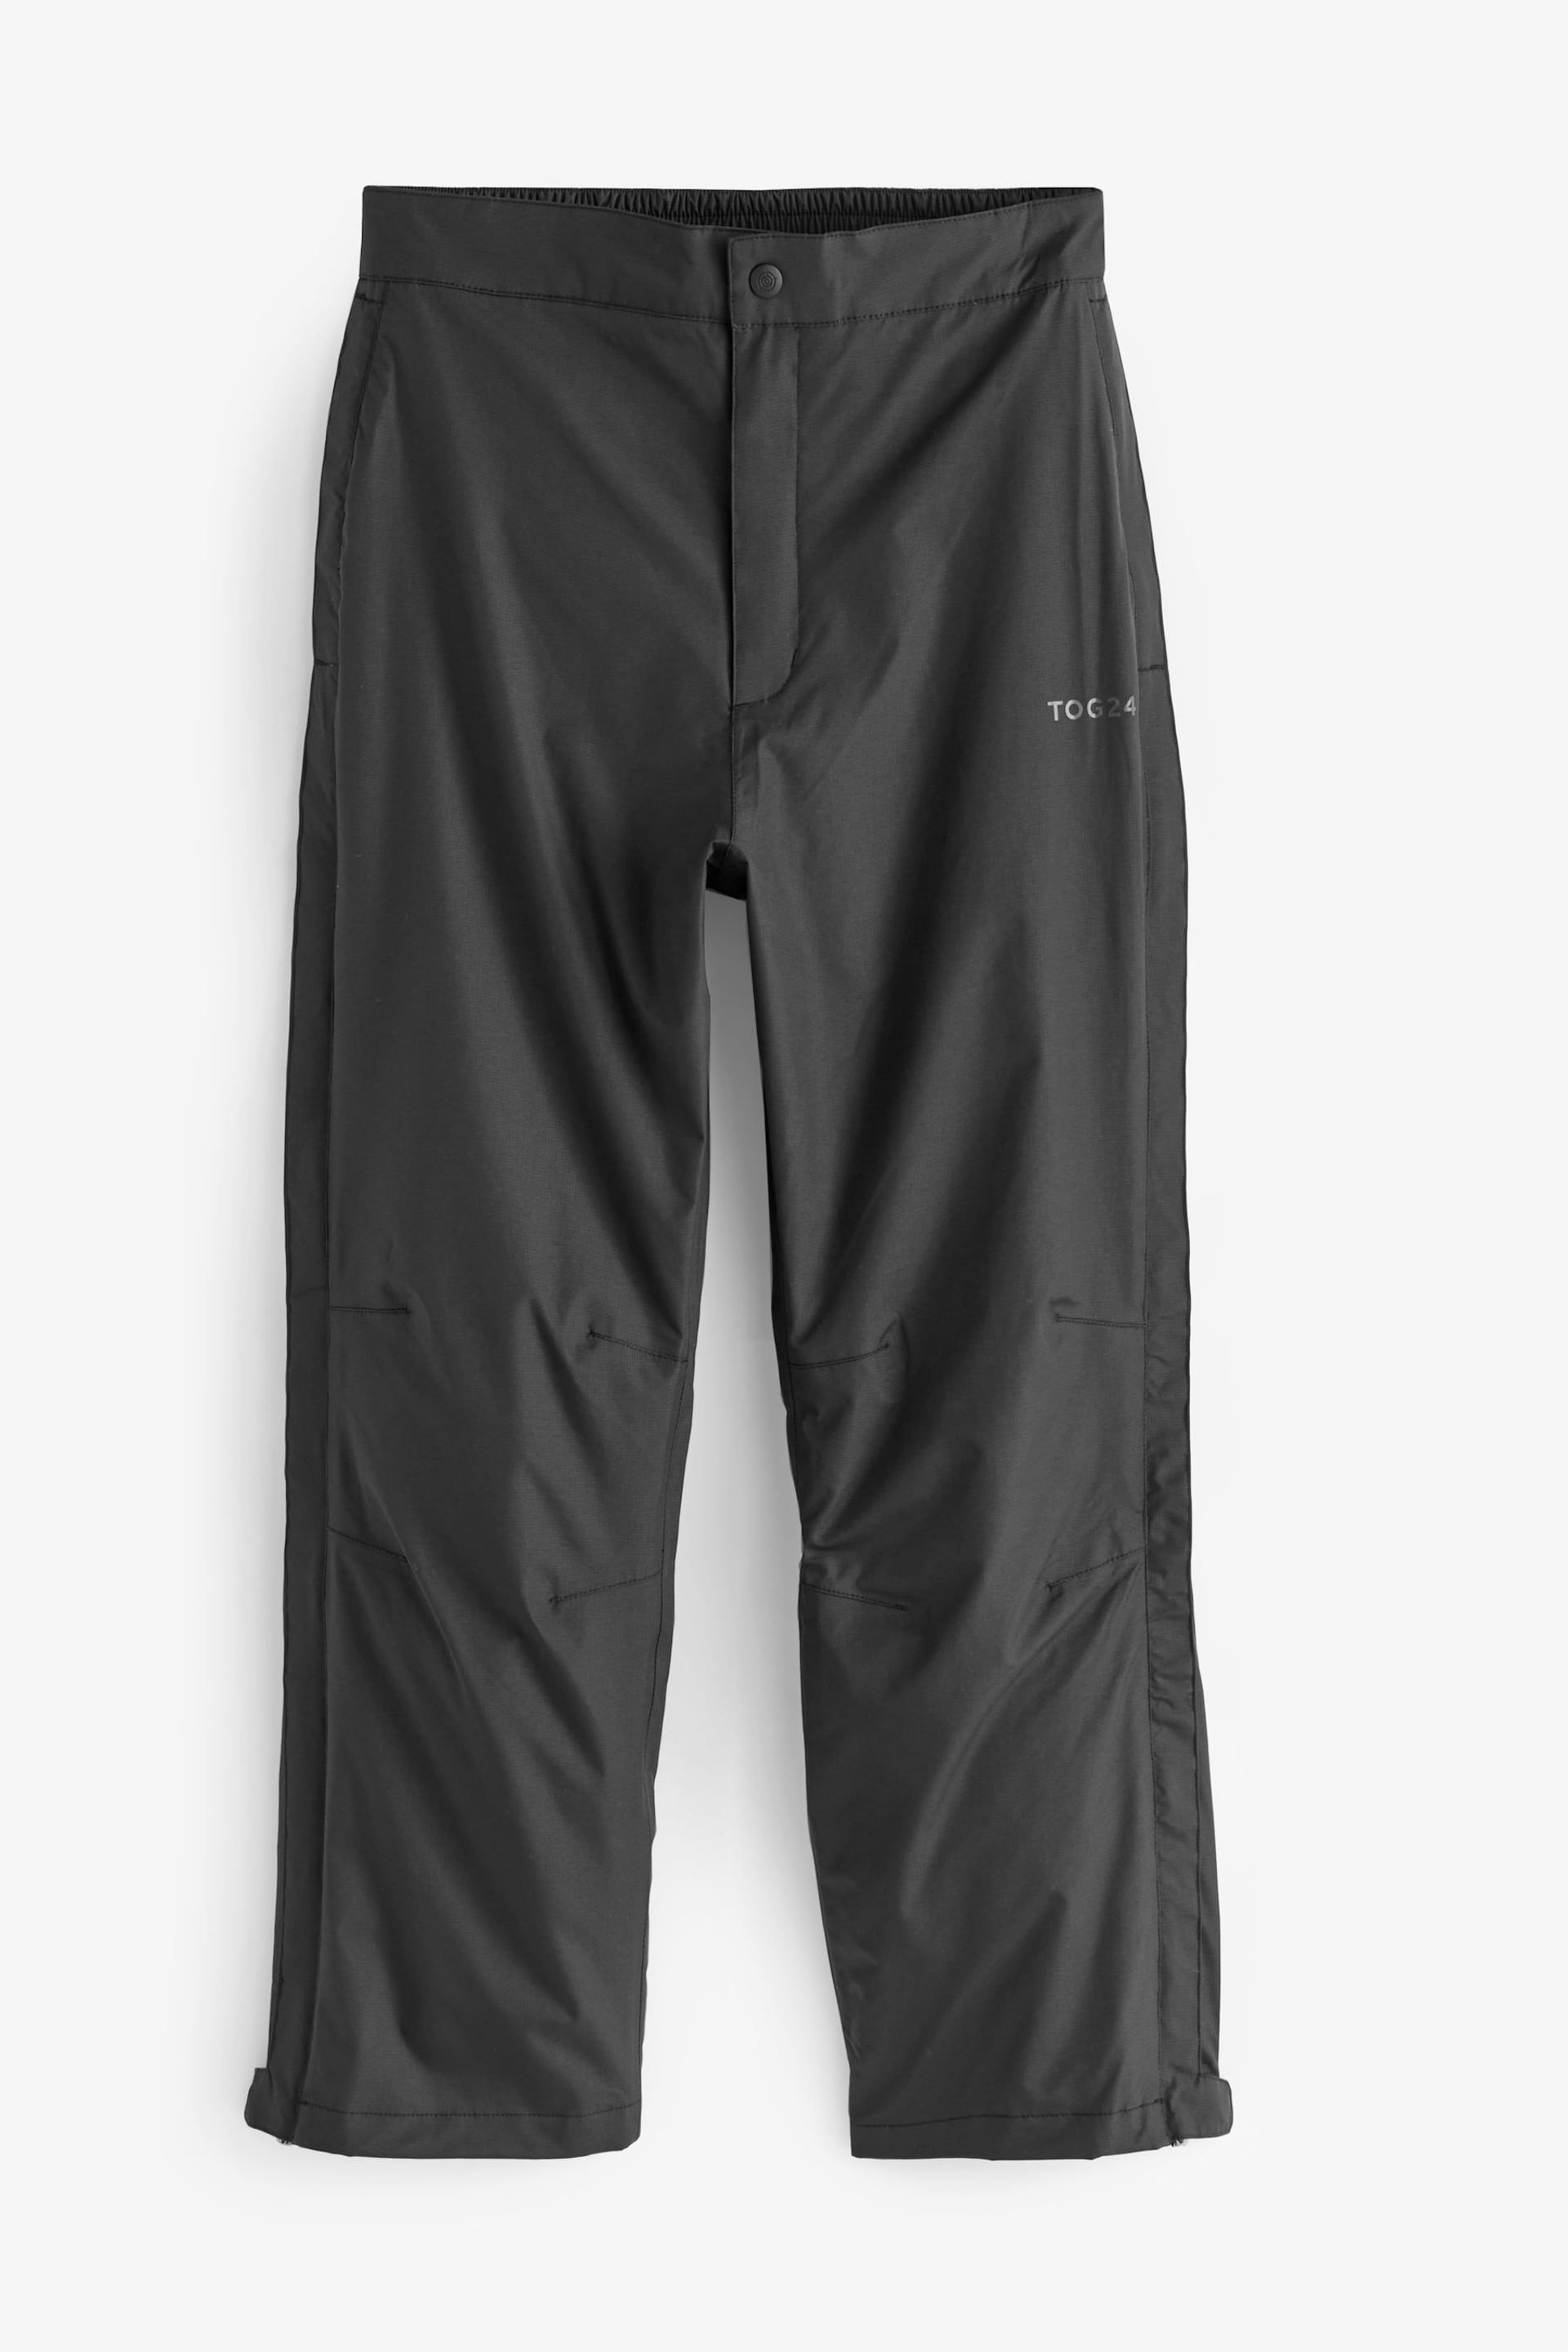 Tog 24 Black Wigton Waterproof Trousers - Image 3 of 3